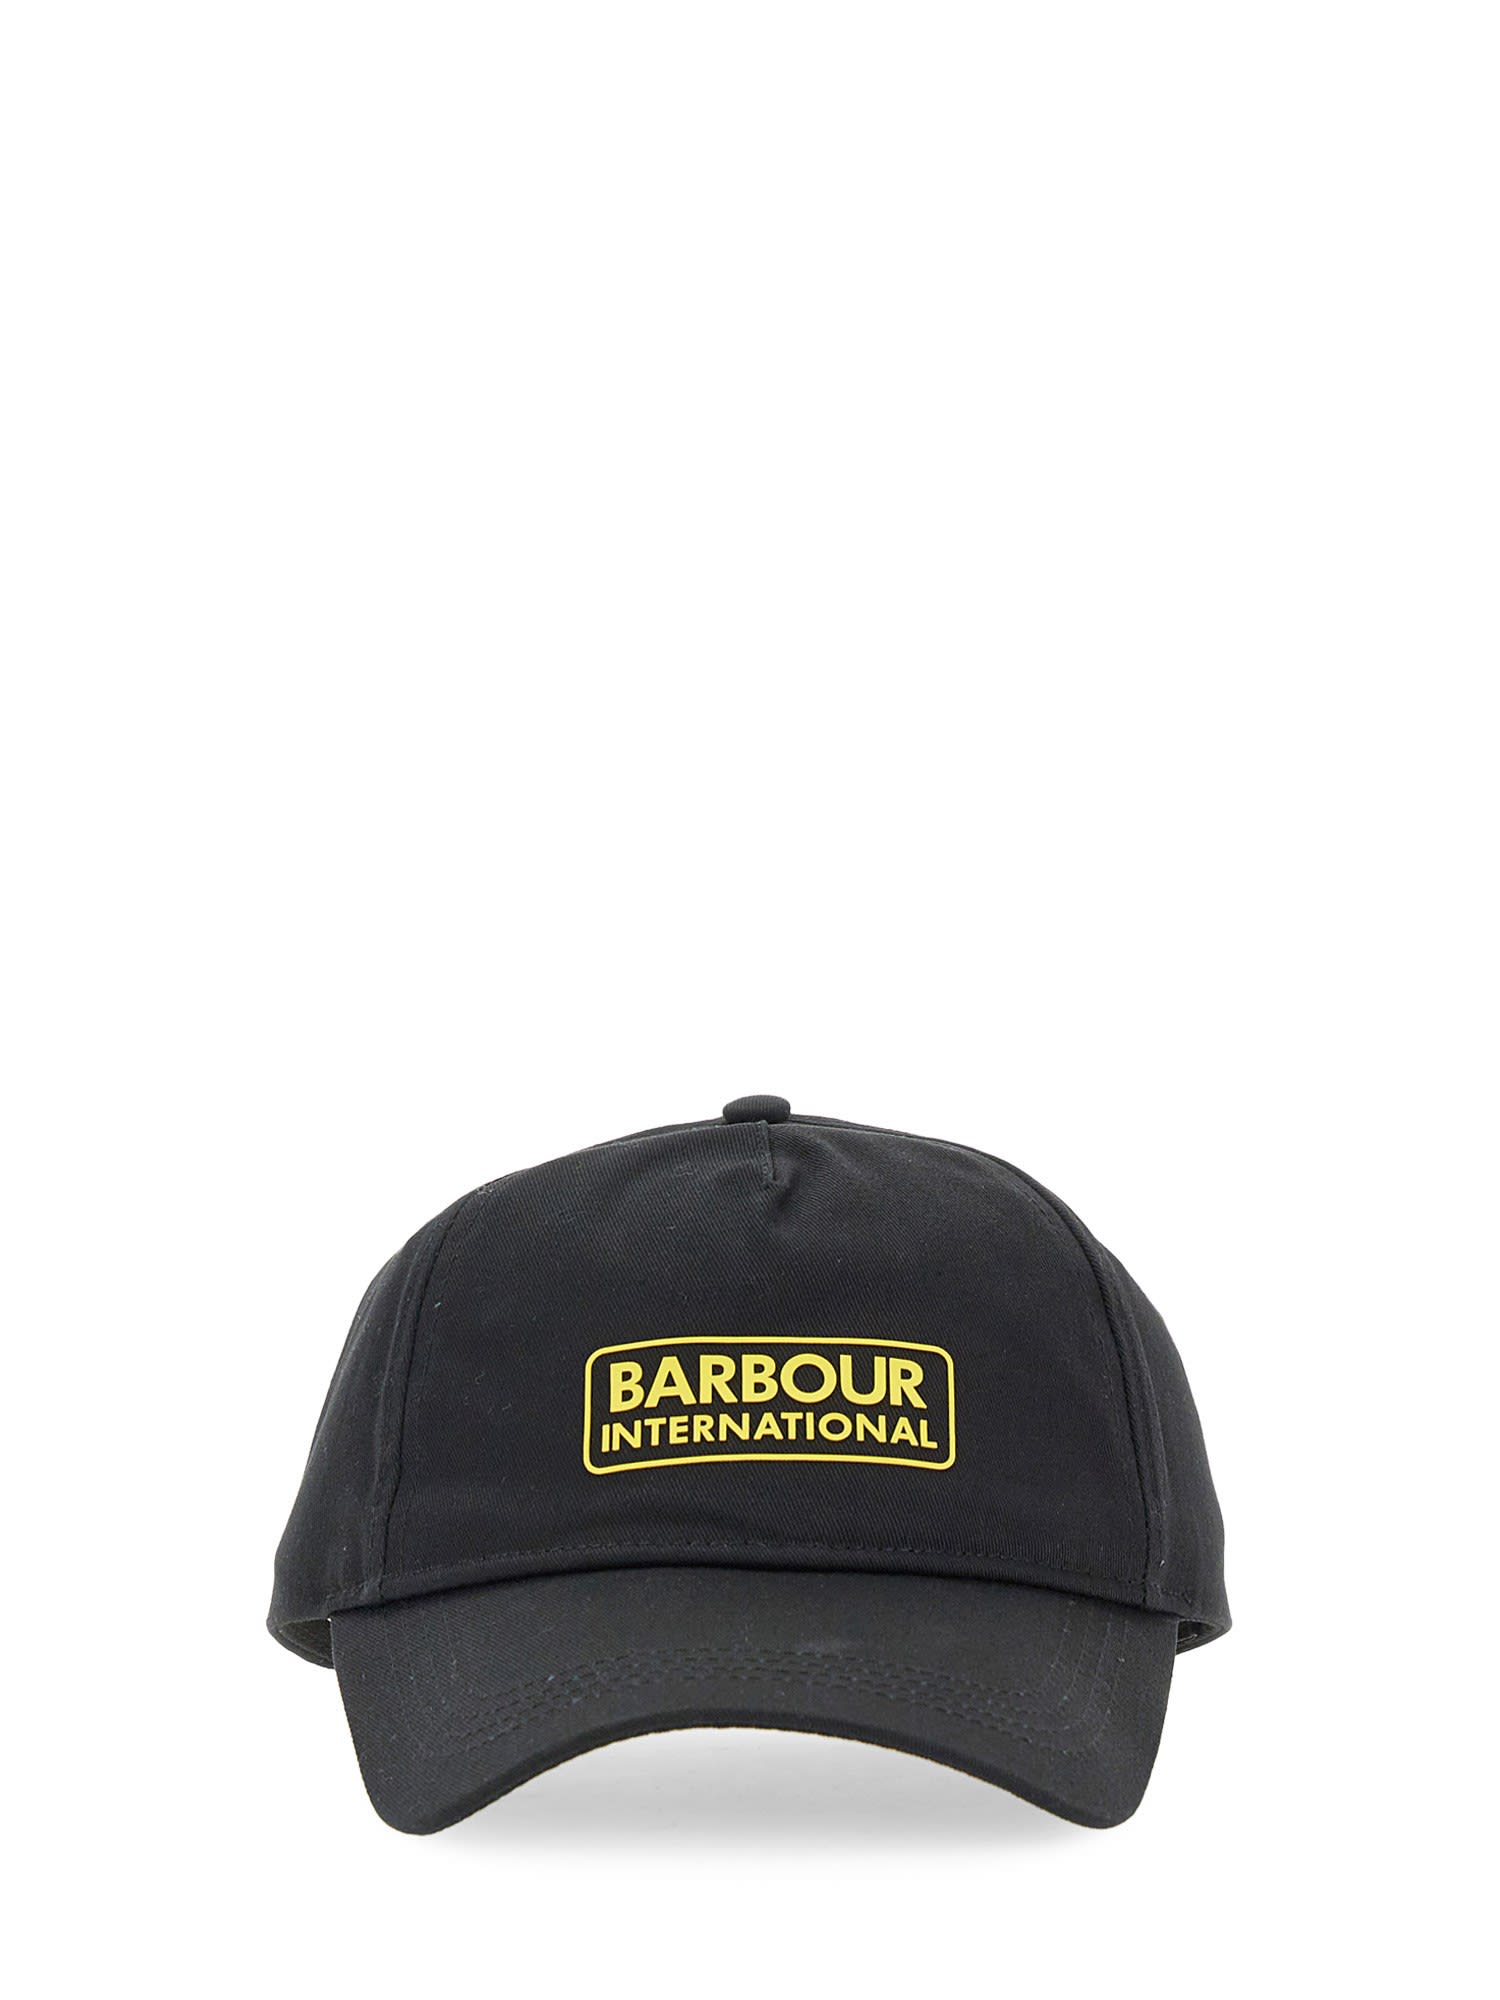 BARBOUR BASEBALL CAP